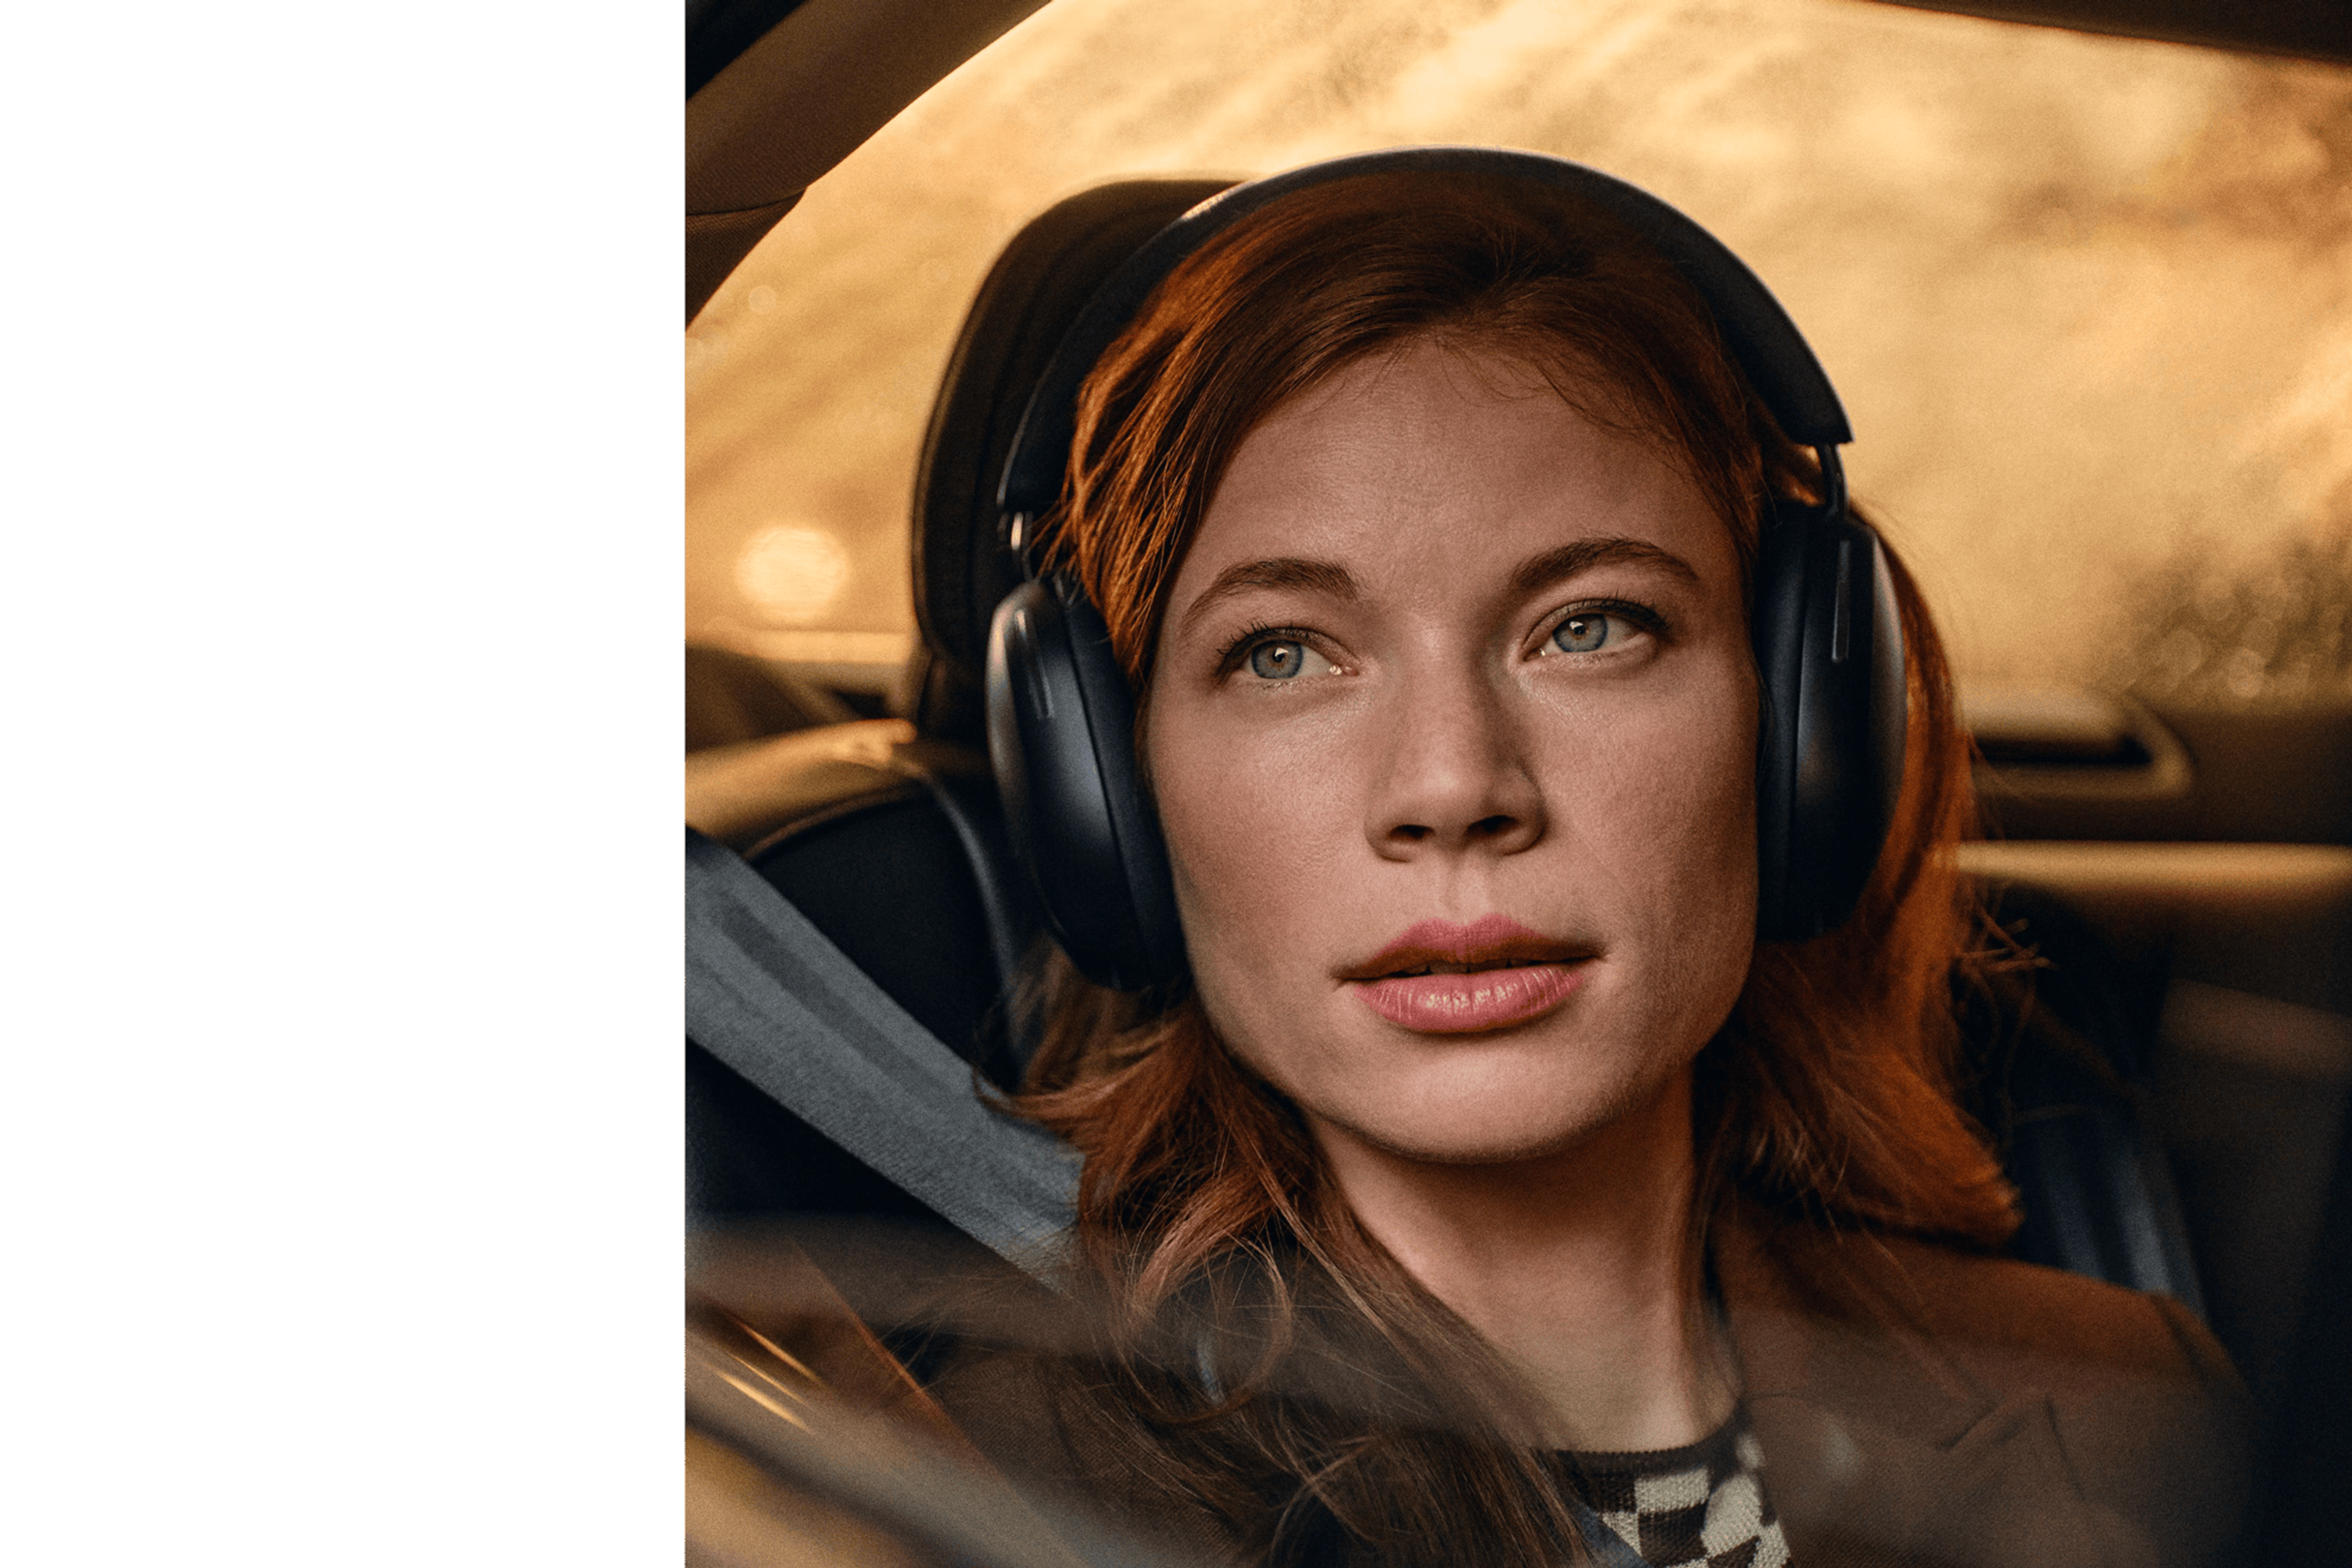 Una mujer usa un par de audífonos Sonos Ace en negro mientras viaja en un auto